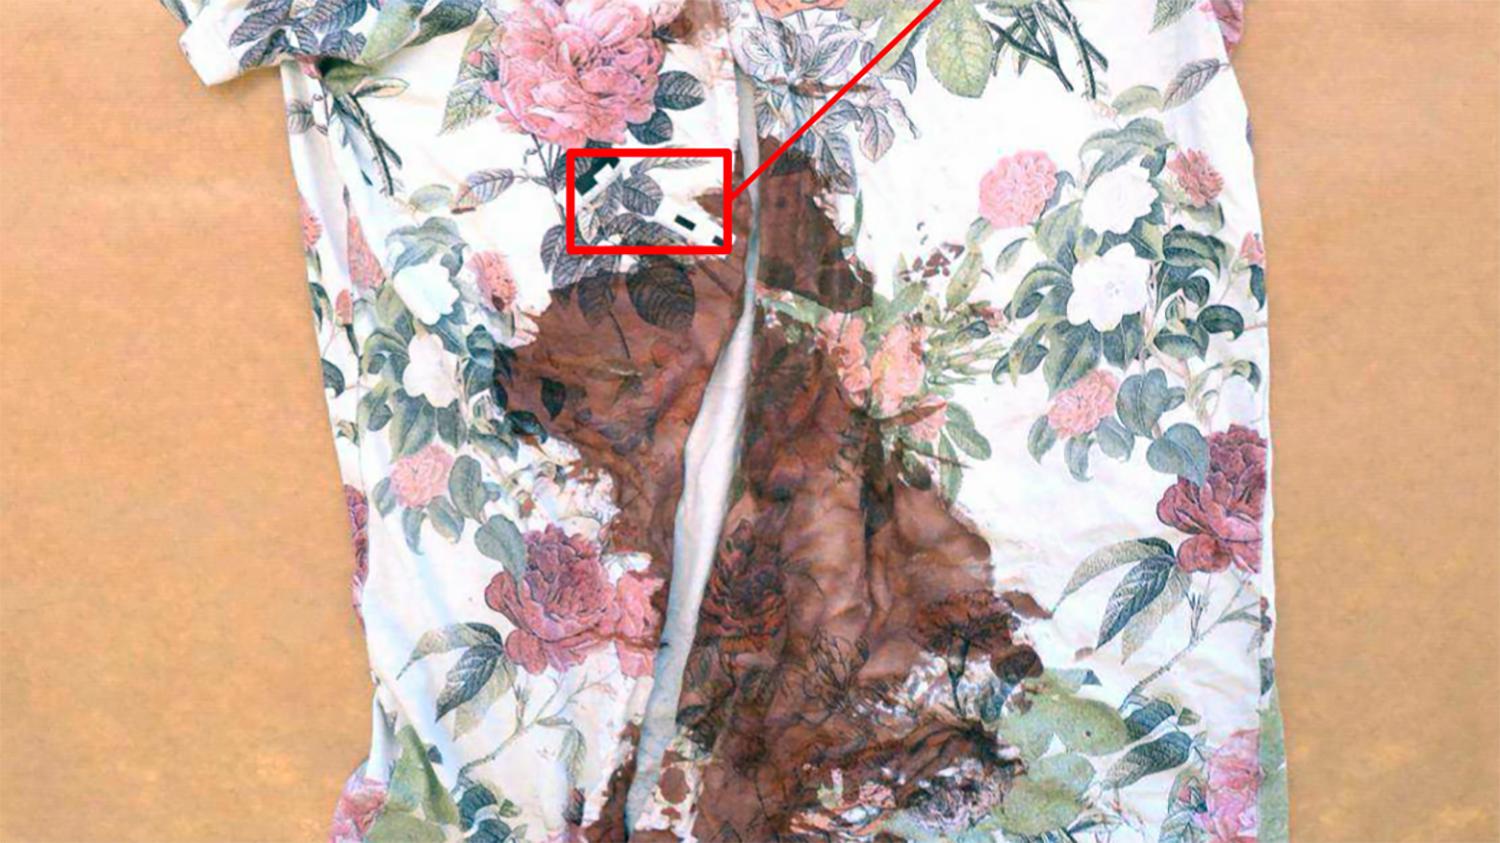 Offrets tröja var dränkt i blod. I bilden syns en markering var kniven gick igenom plagget. I samband med räddningsinsats klipptes plagget upp. Bild från förundersökningen.